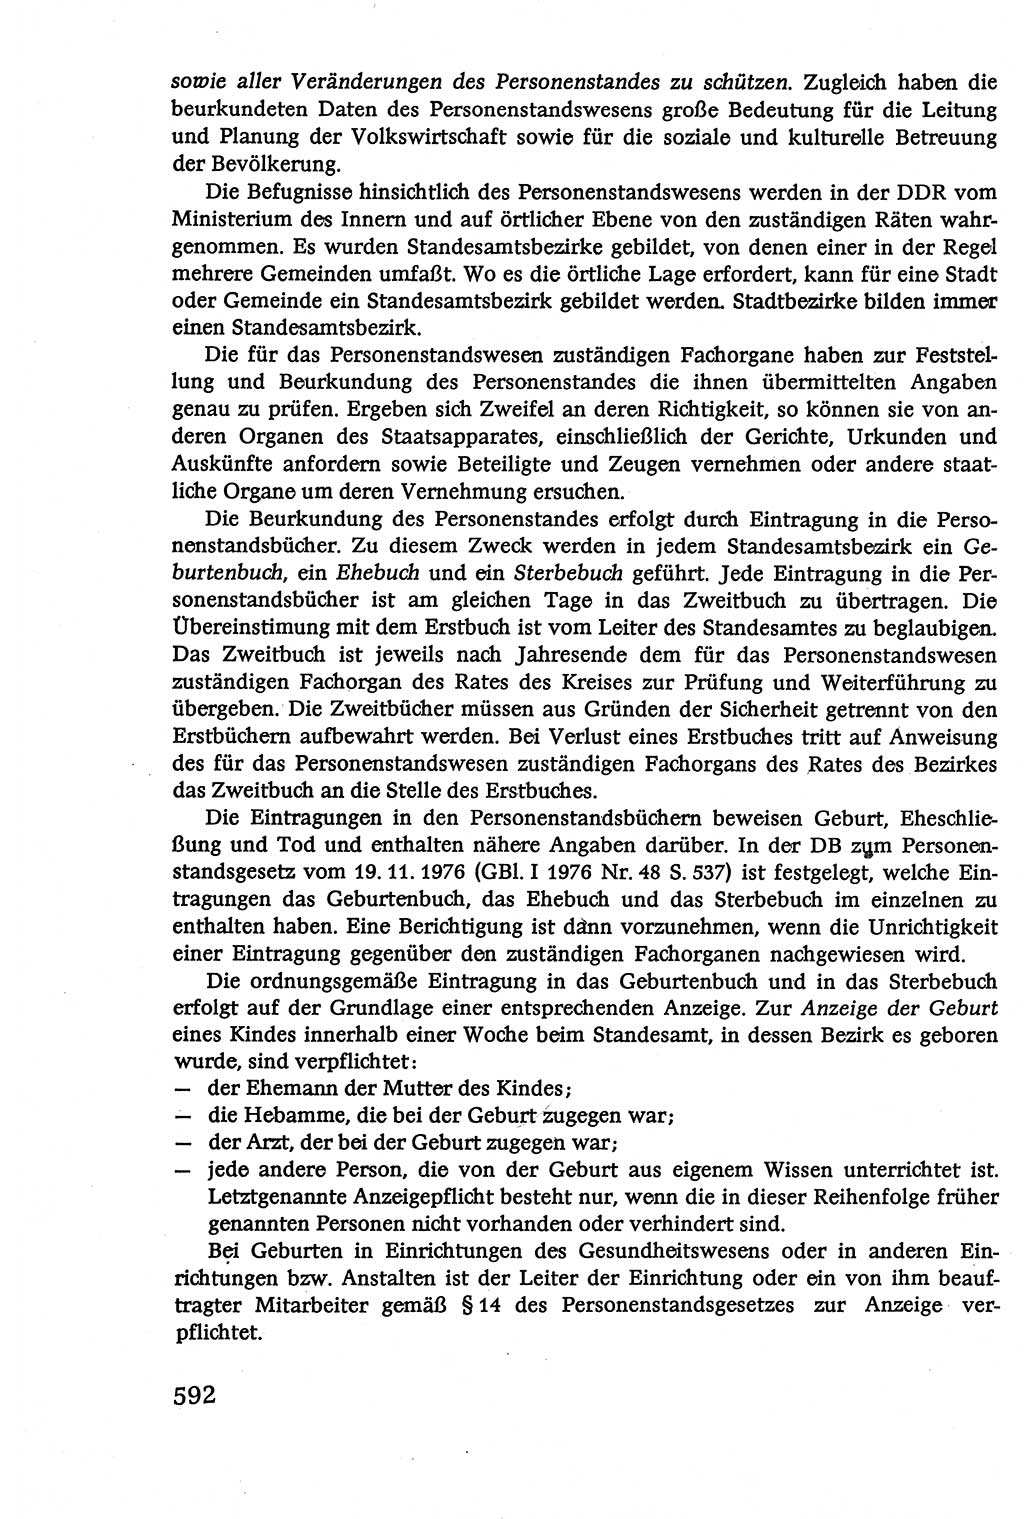 Verwaltungsrecht [Deutsche Demokratische Republik (DDR)], Lehrbuch 1979, Seite 592 (Verw.-R. DDR Lb. 1979, S. 592)